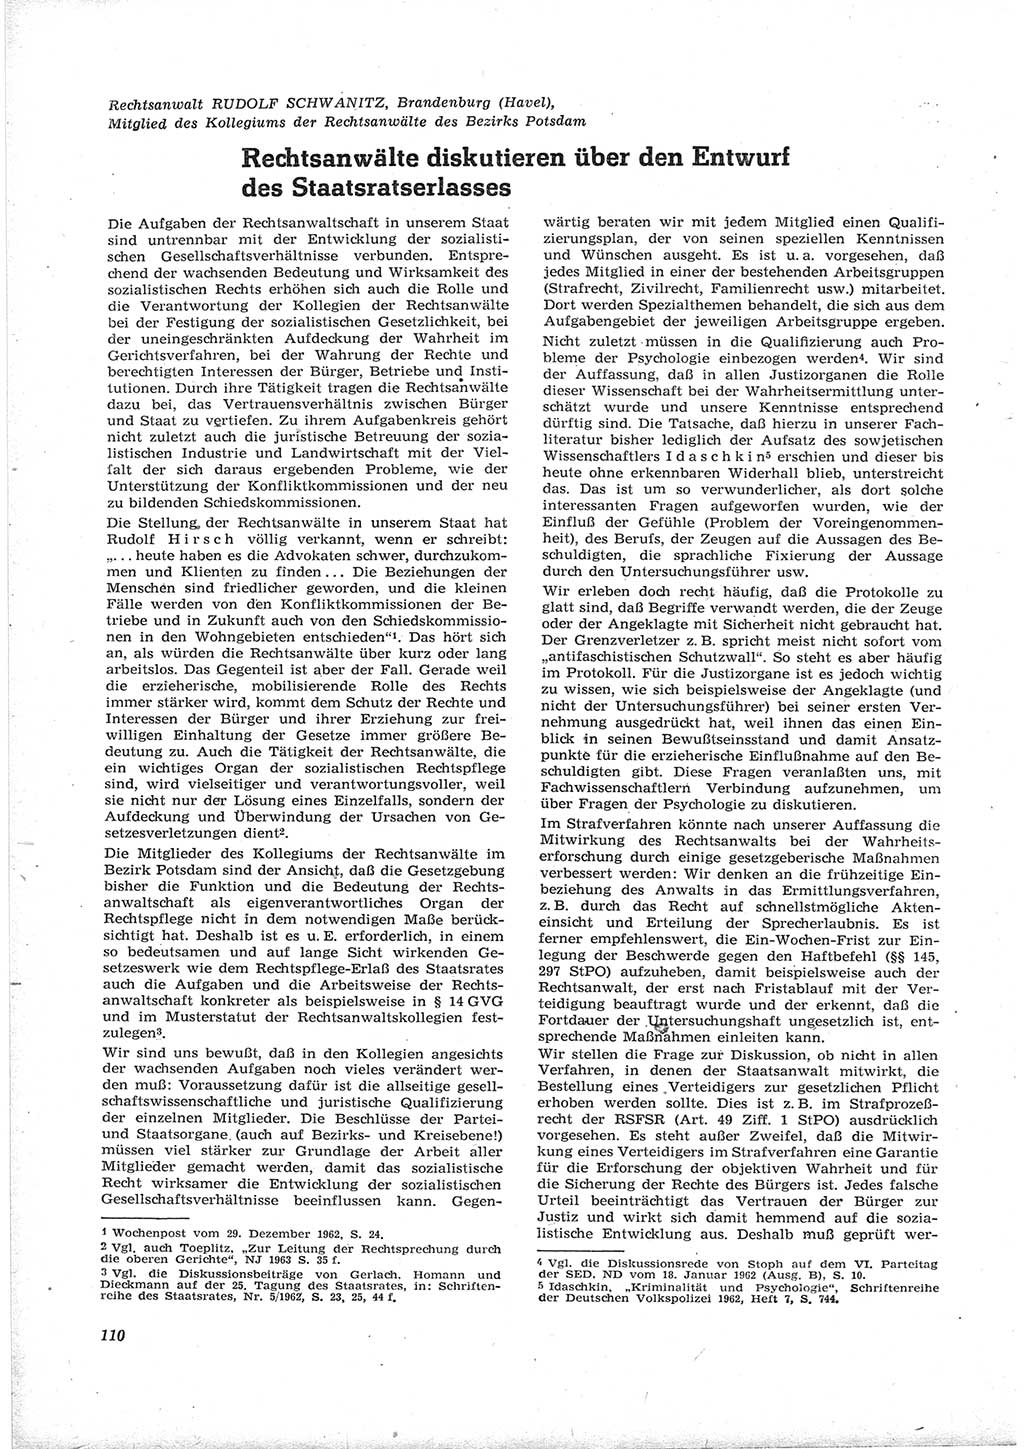 Neue Justiz (NJ), Zeitschrift für Recht und Rechtswissenschaft [Deutsche Demokratische Republik (DDR)], 17. Jahrgang 1963, Seite 110 (NJ DDR 1963, S. 110)